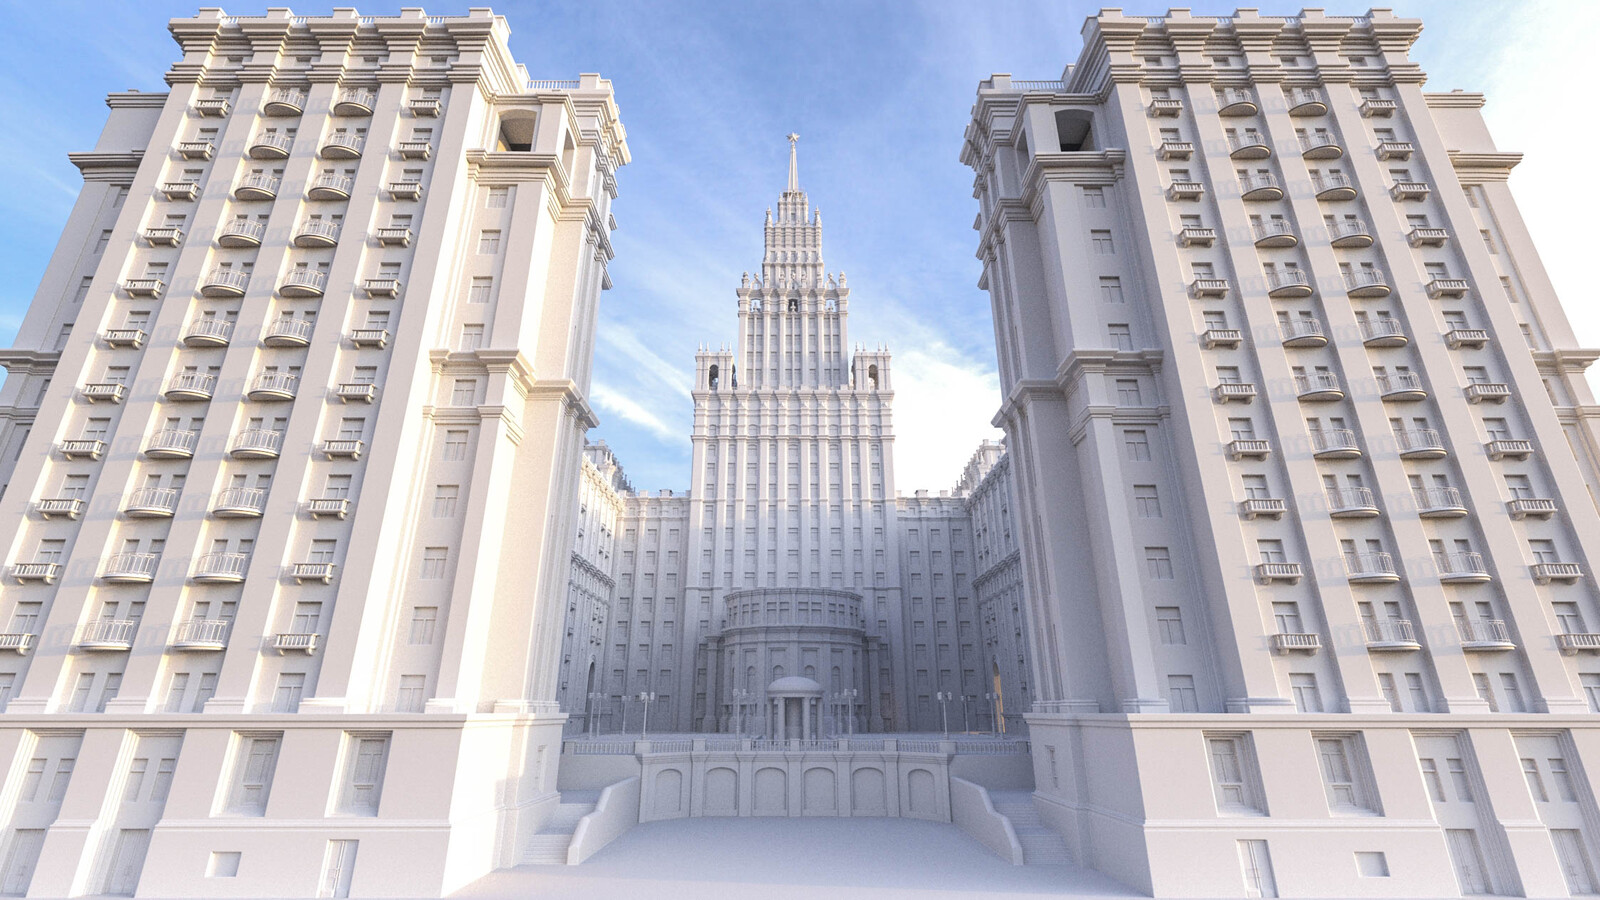 МГУ архитектура здания сталинский Ампир